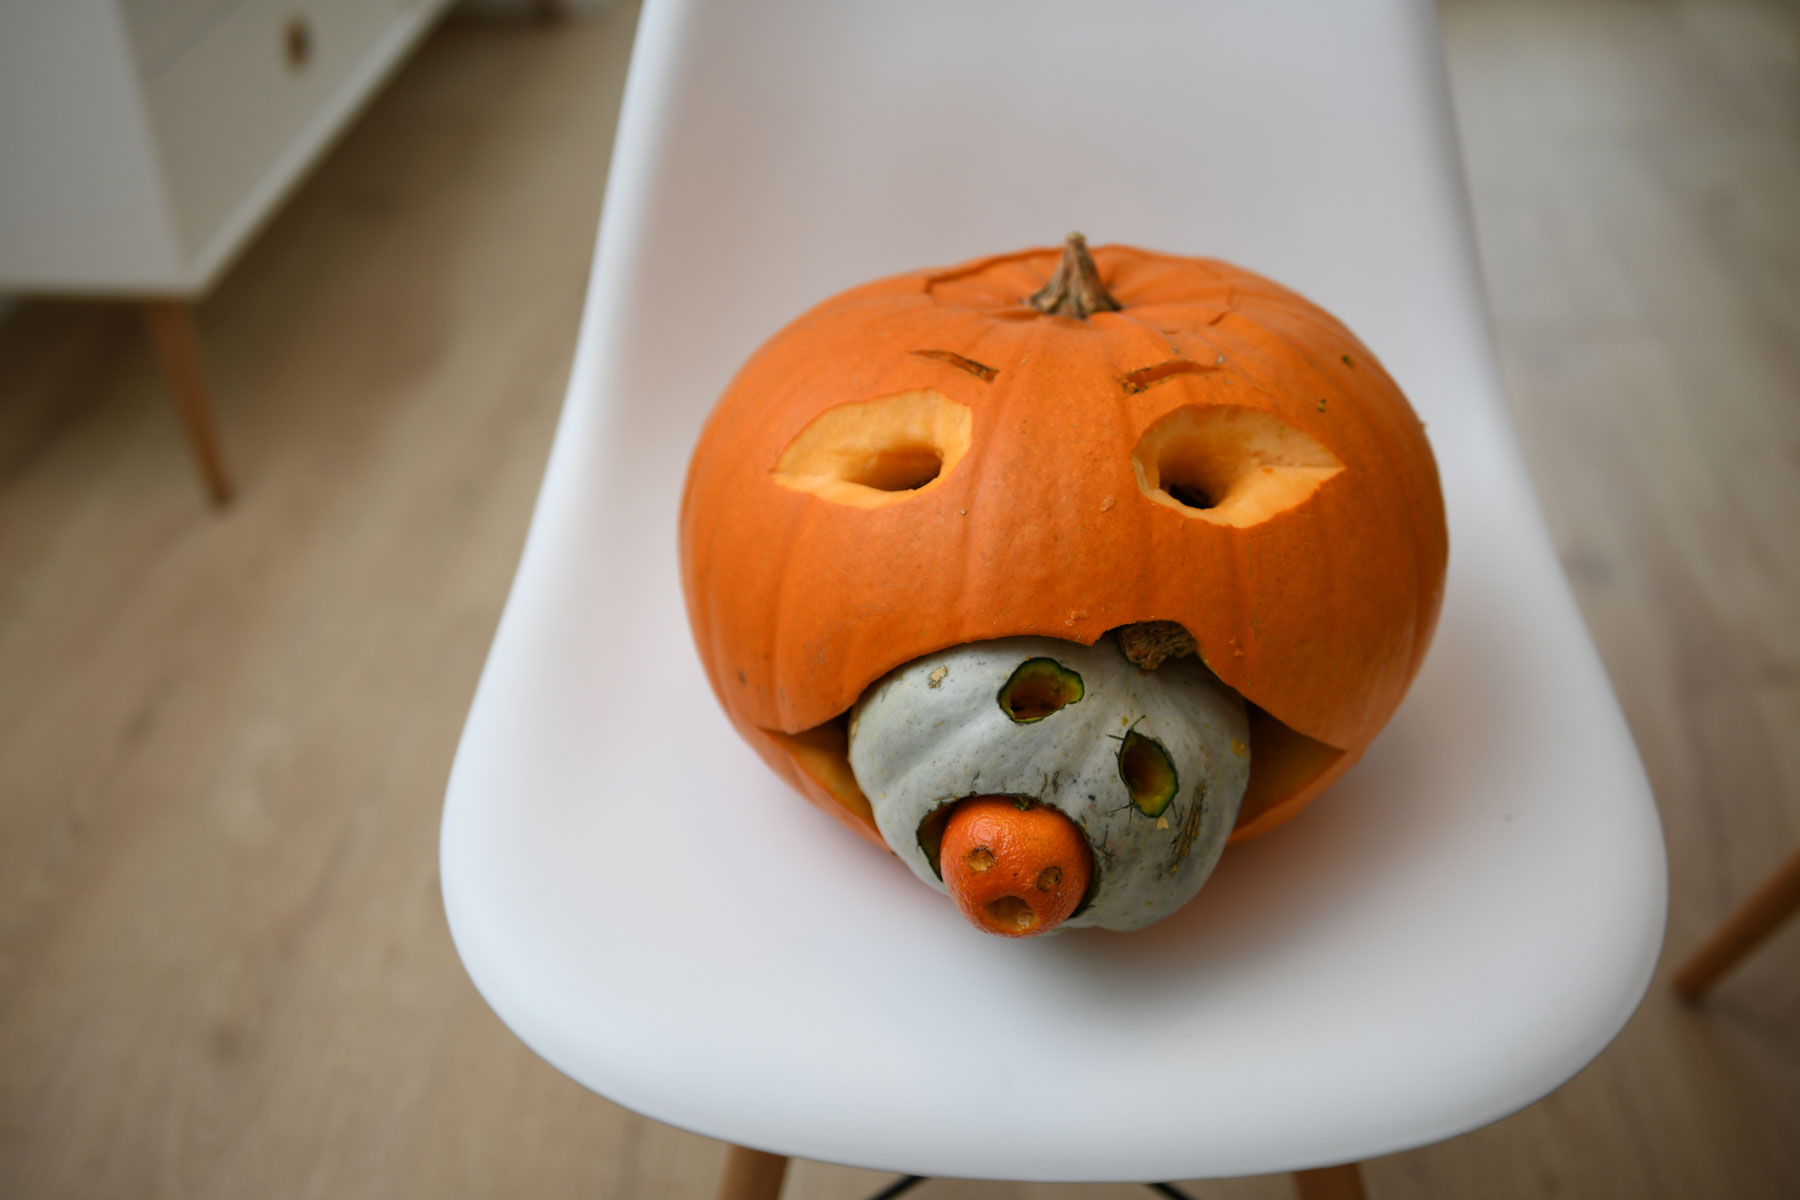 Hallowwen pumpkin carving ideas